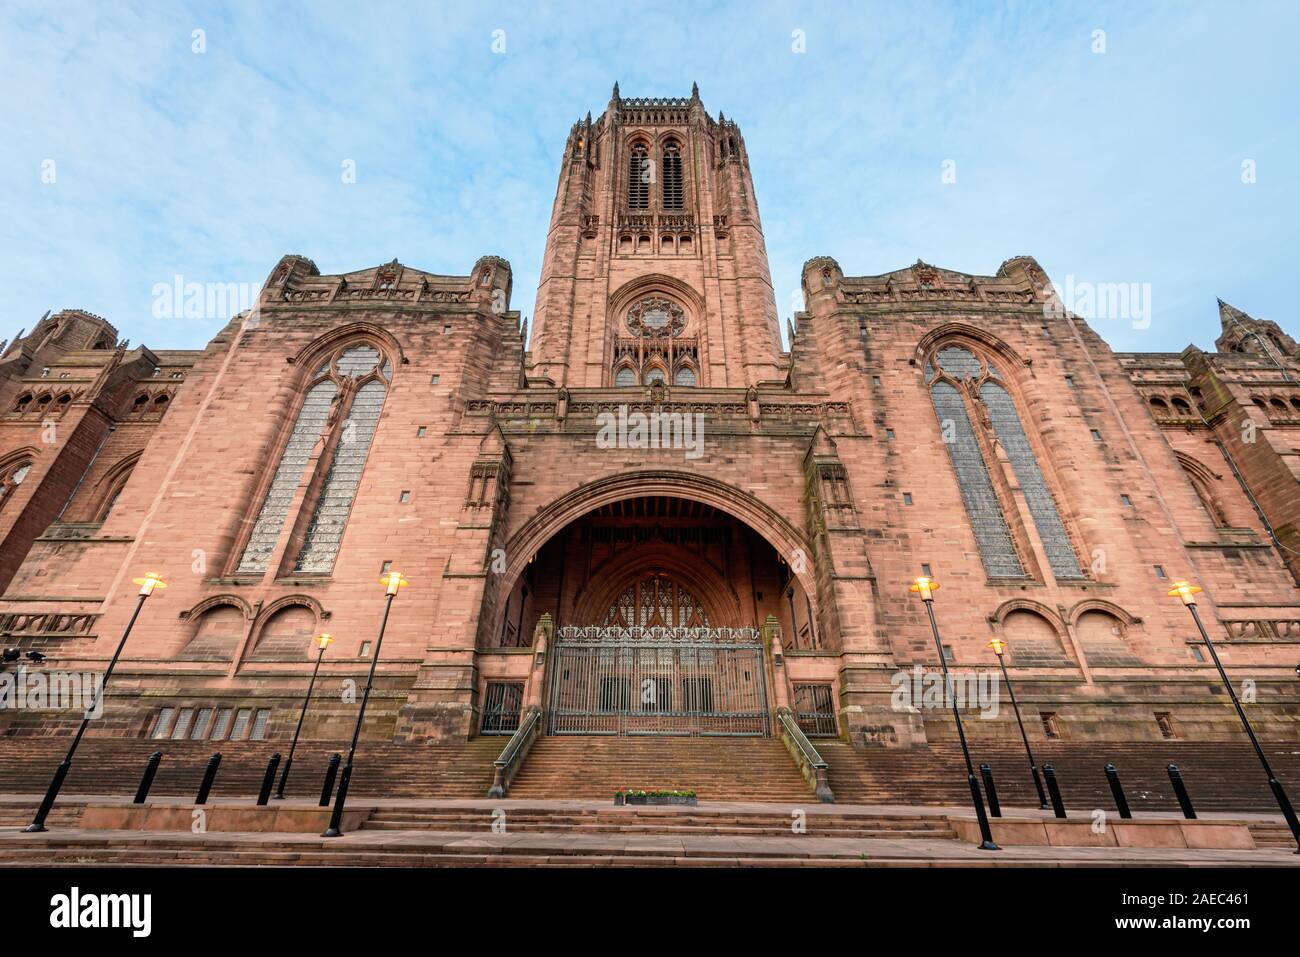 LIVERPOOL, ENGLAND-11 Mai 2015: Kathedrale von Liverpool oder die Kathedrale Kirche des auferstandenen Christus in Liverpool, Großbritannien Stockfoto